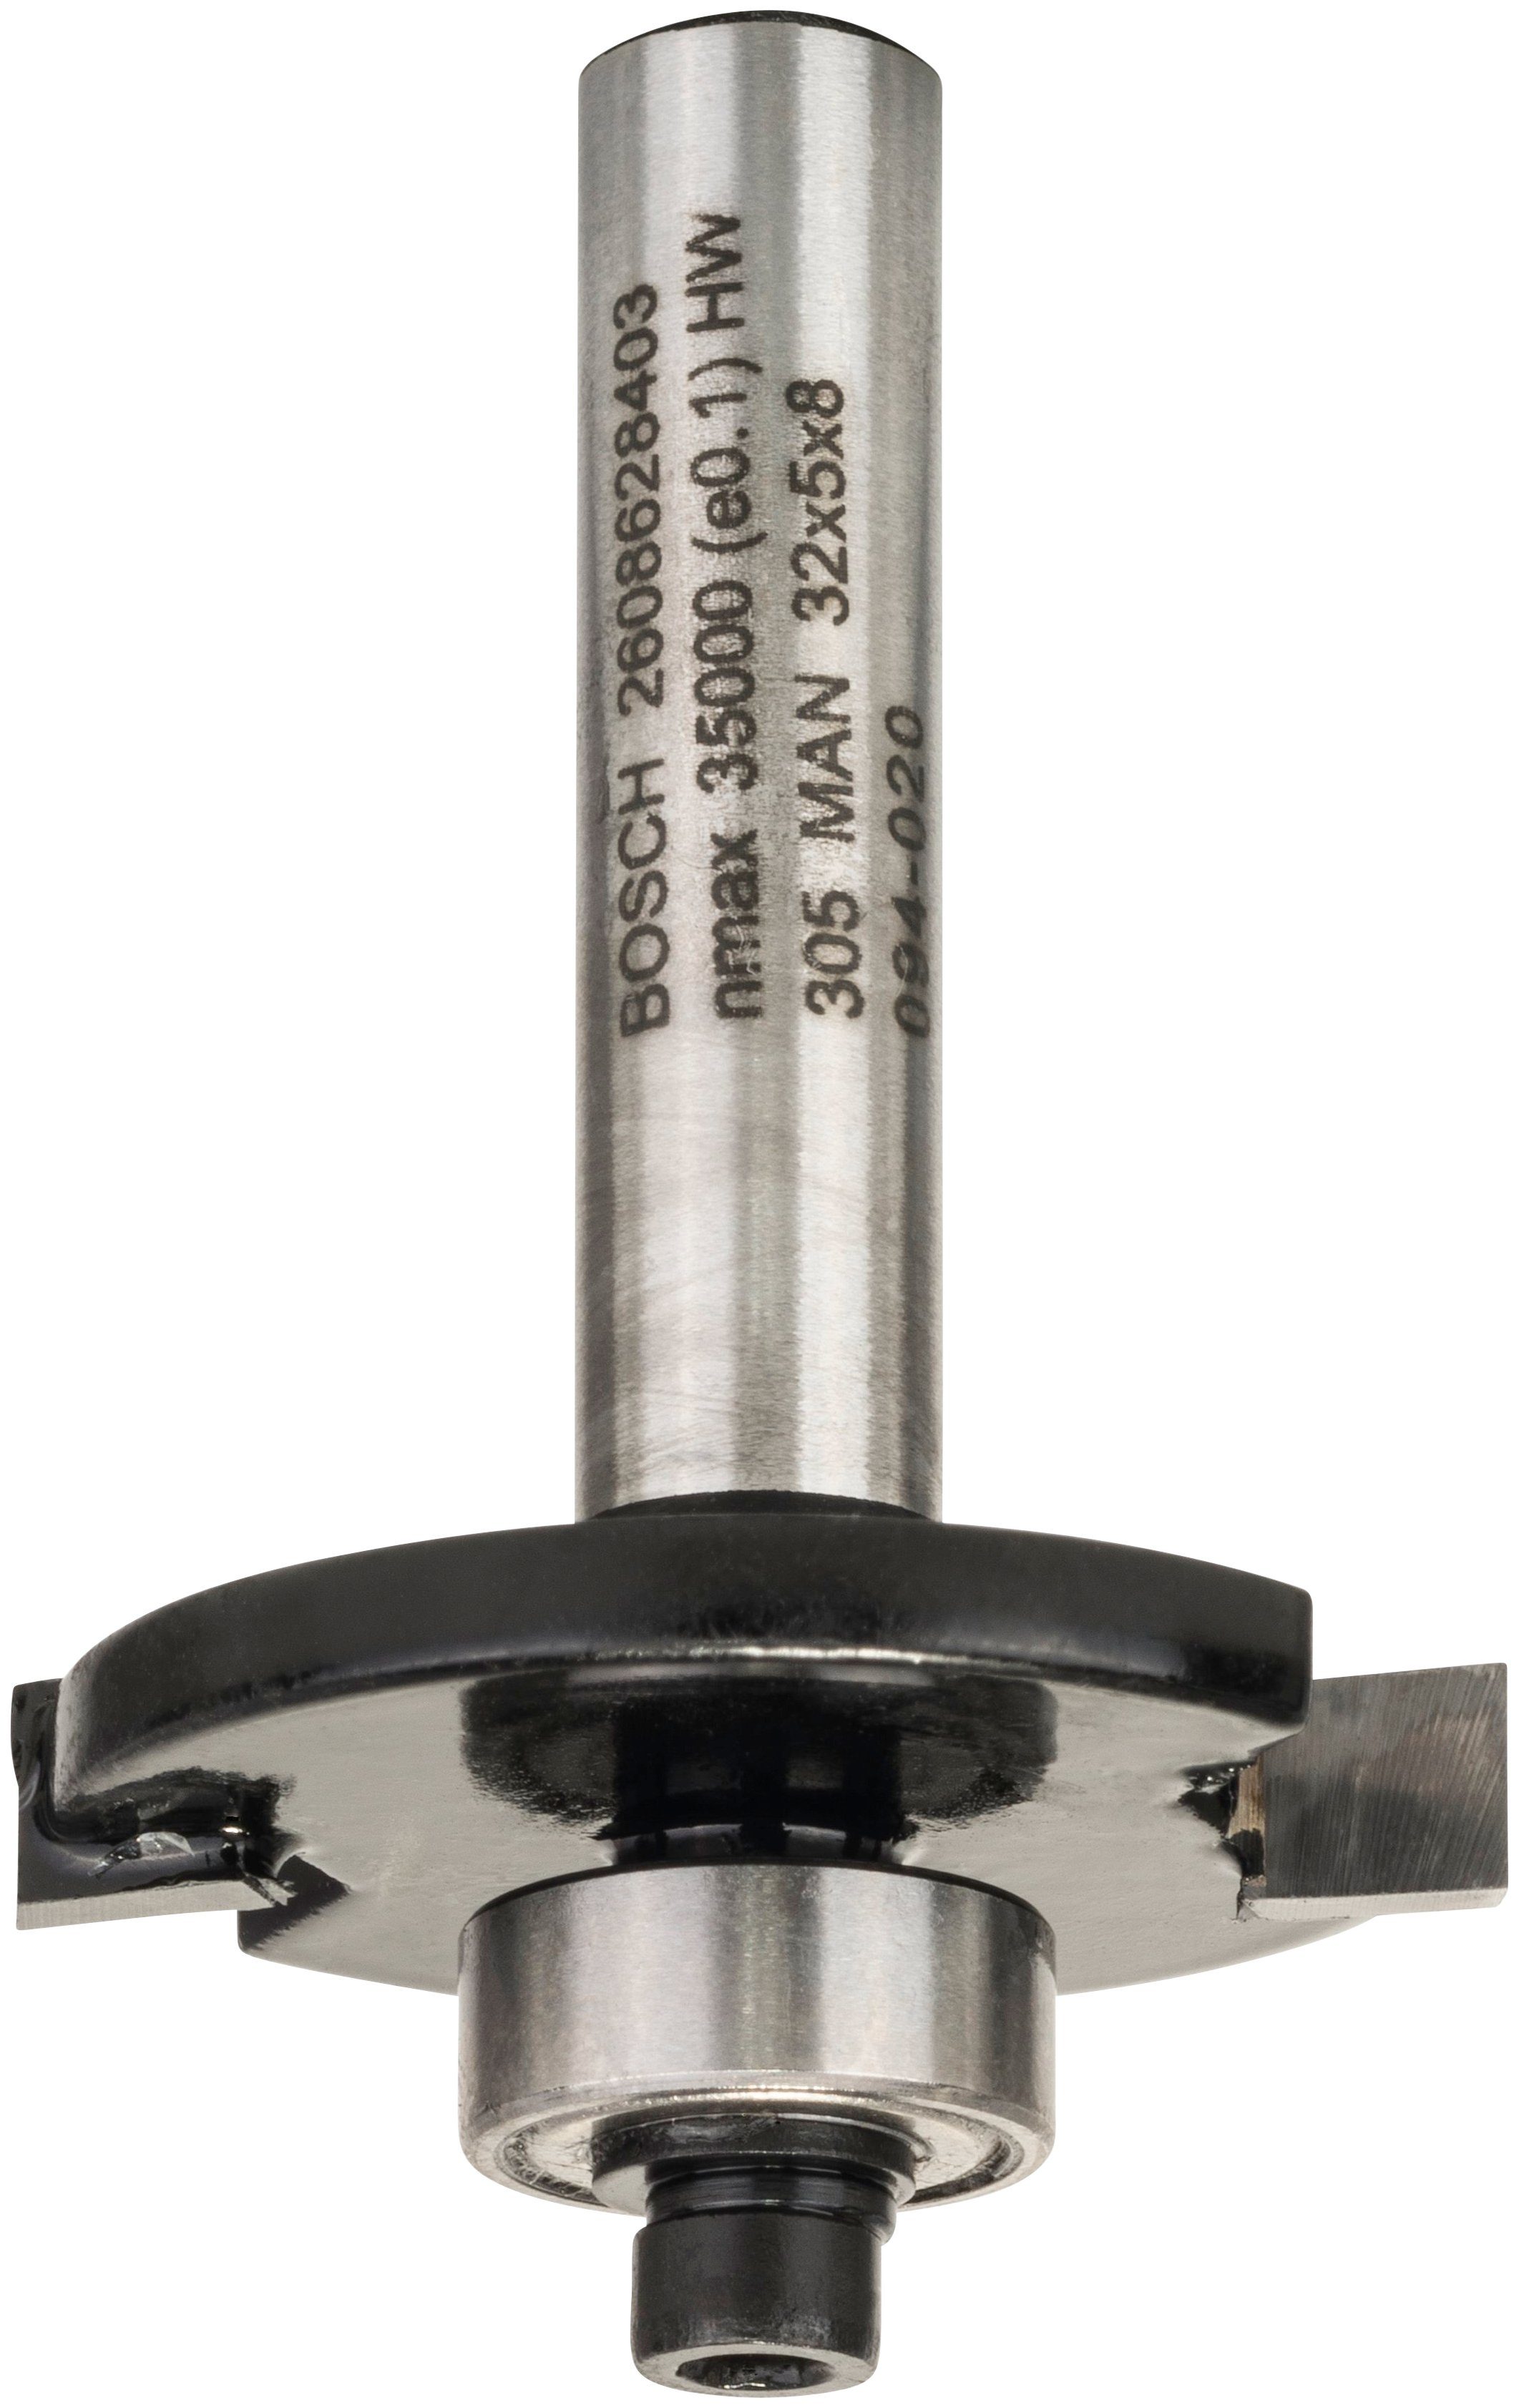 Nutzlänge: Bosch mm, Scheibenfräser Radius 5 for Wood, 32 Standard Professional mm